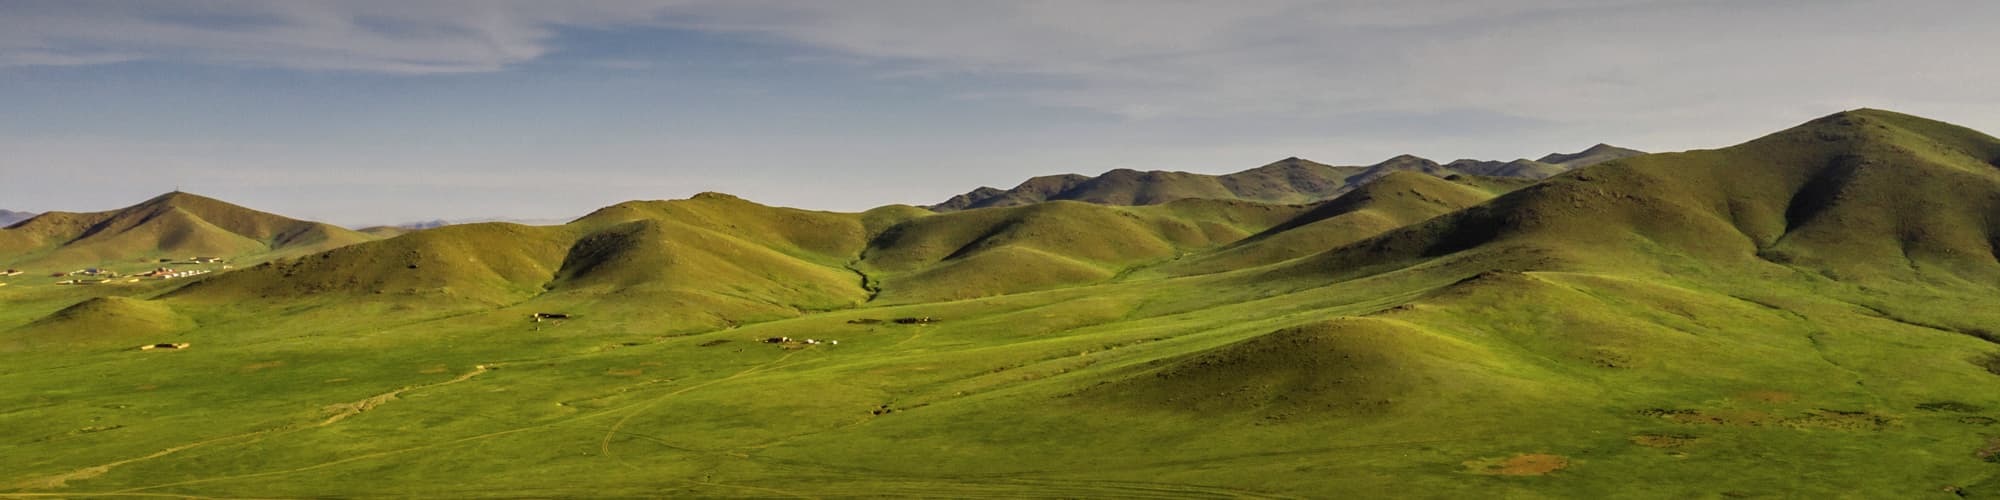 Voyage en famille Mongolie © Travel Stock / Adobe Stock